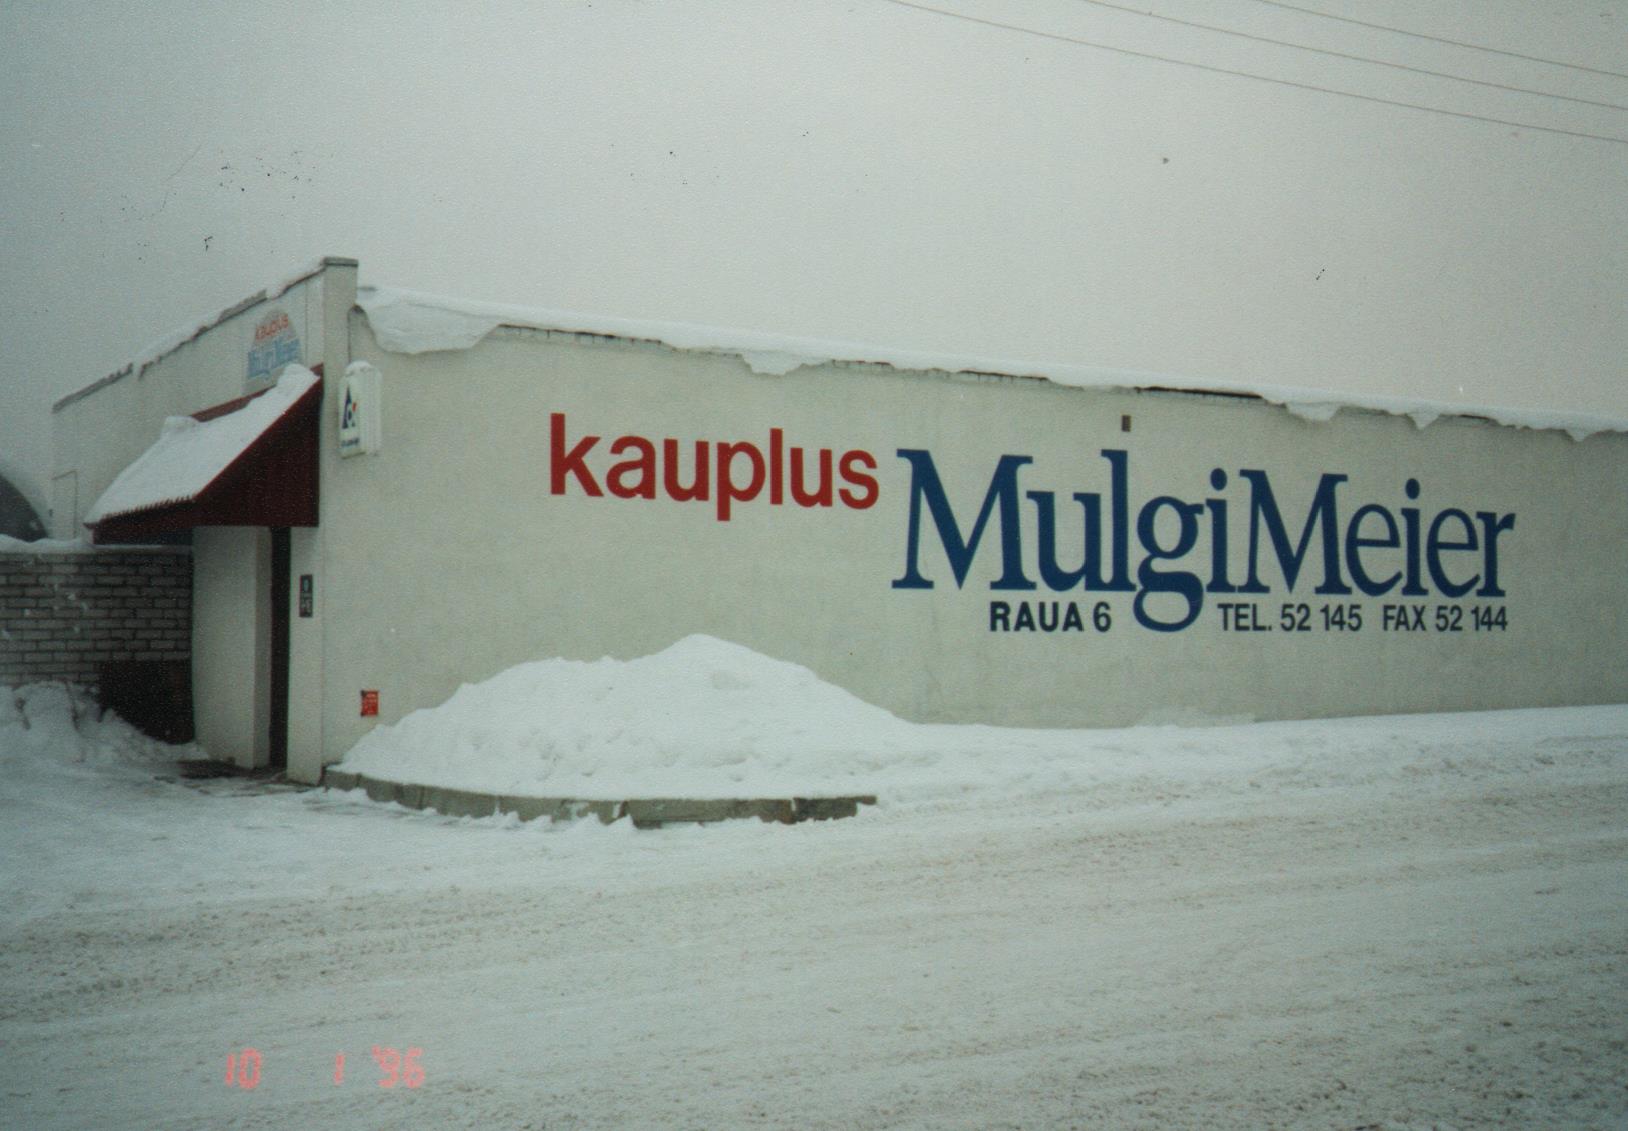 Mulgi Meier talukaupade kauplus Viljandis